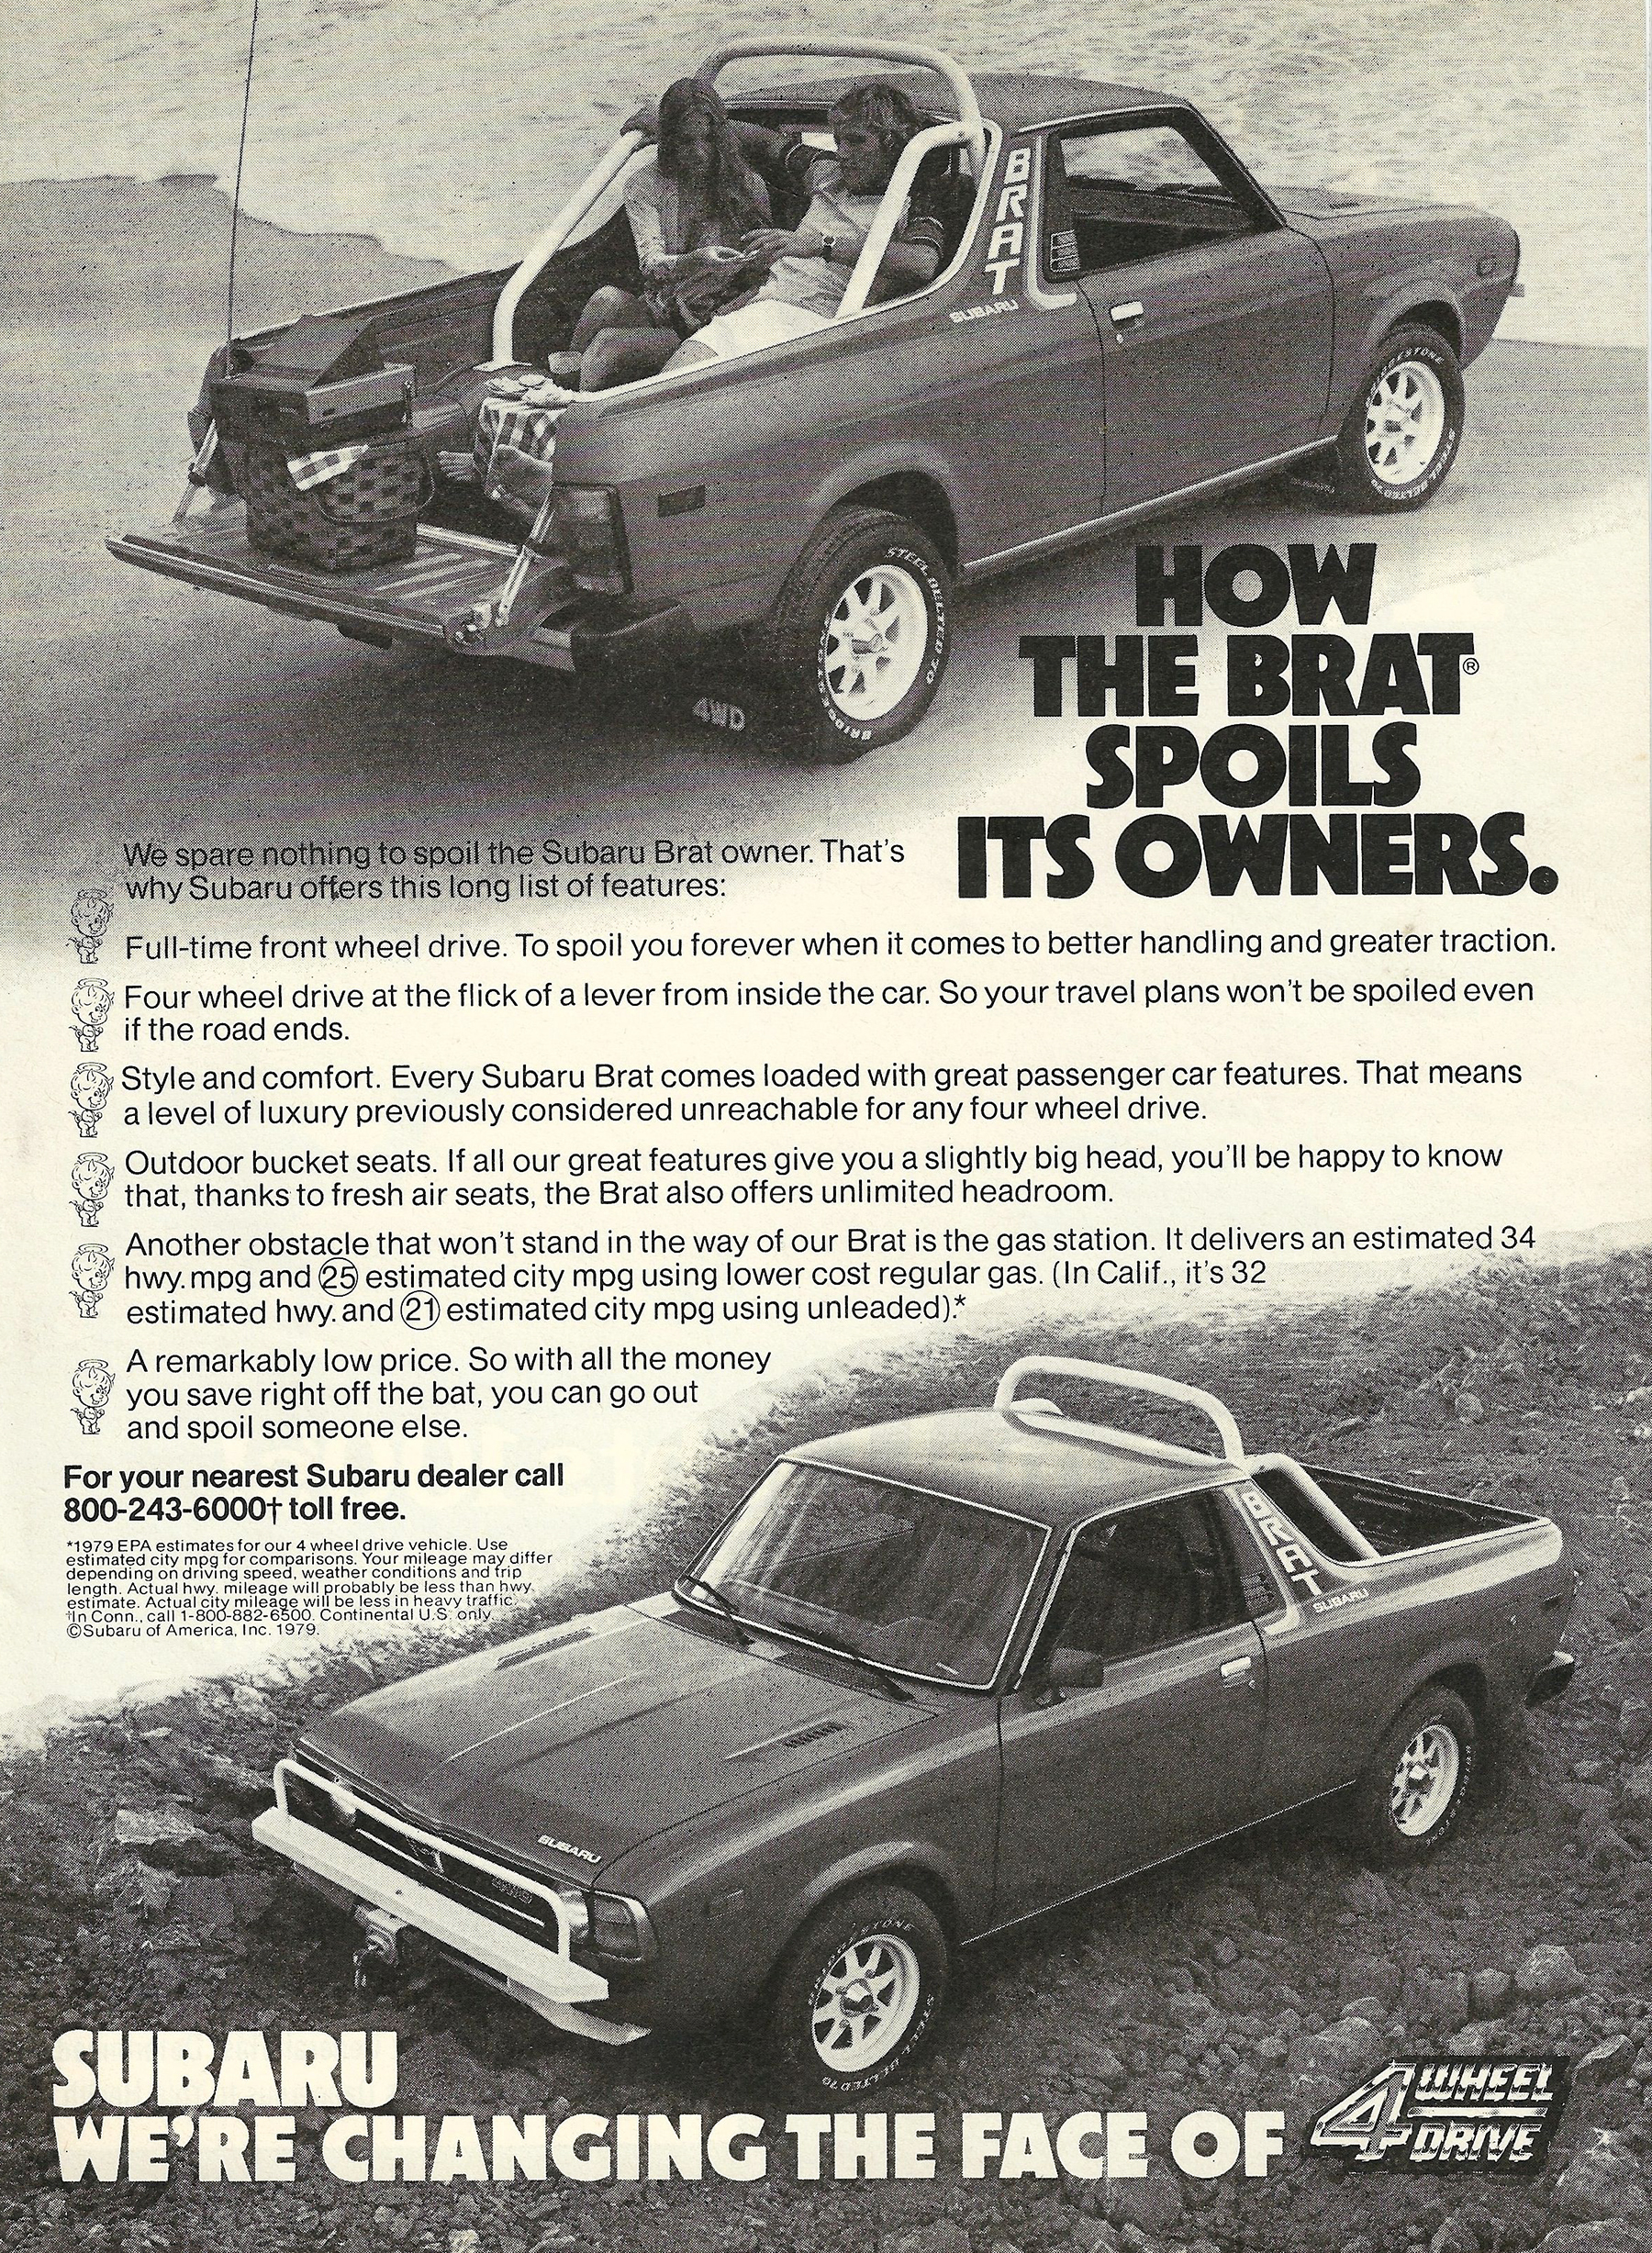 1979 Subaru Brat, Small-Truck Ads